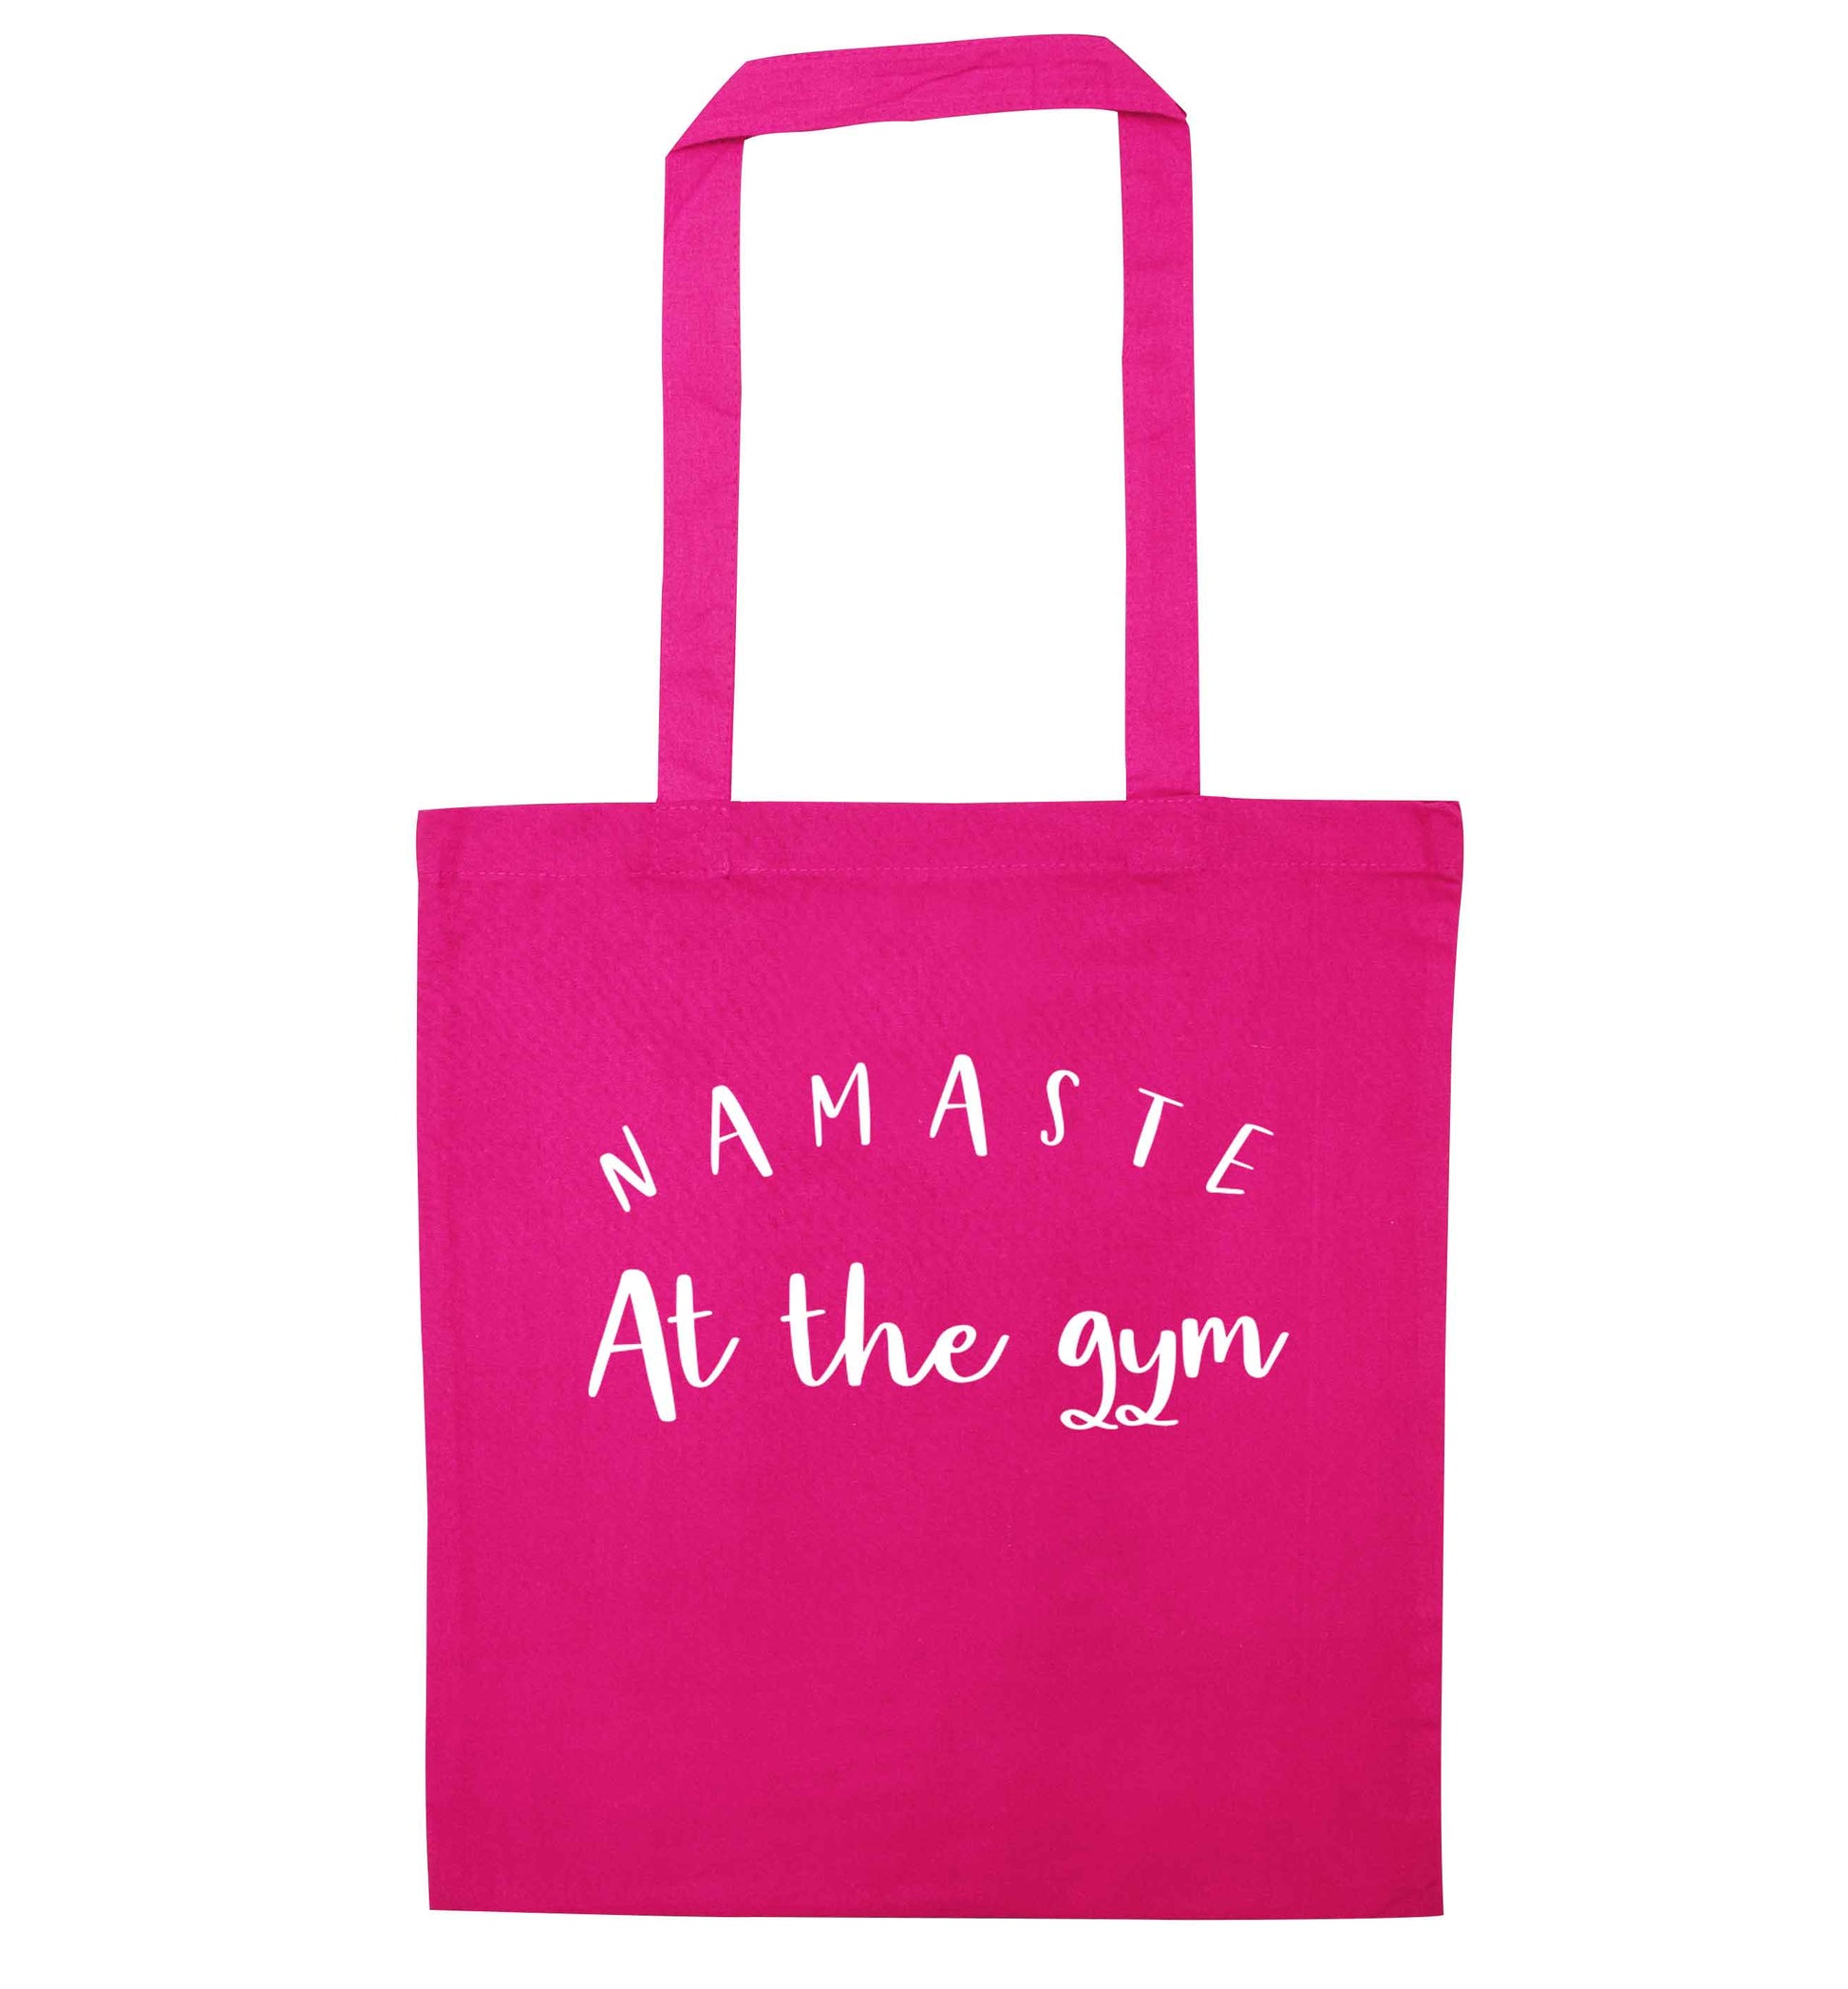 Namaste at the gym pink tote bag